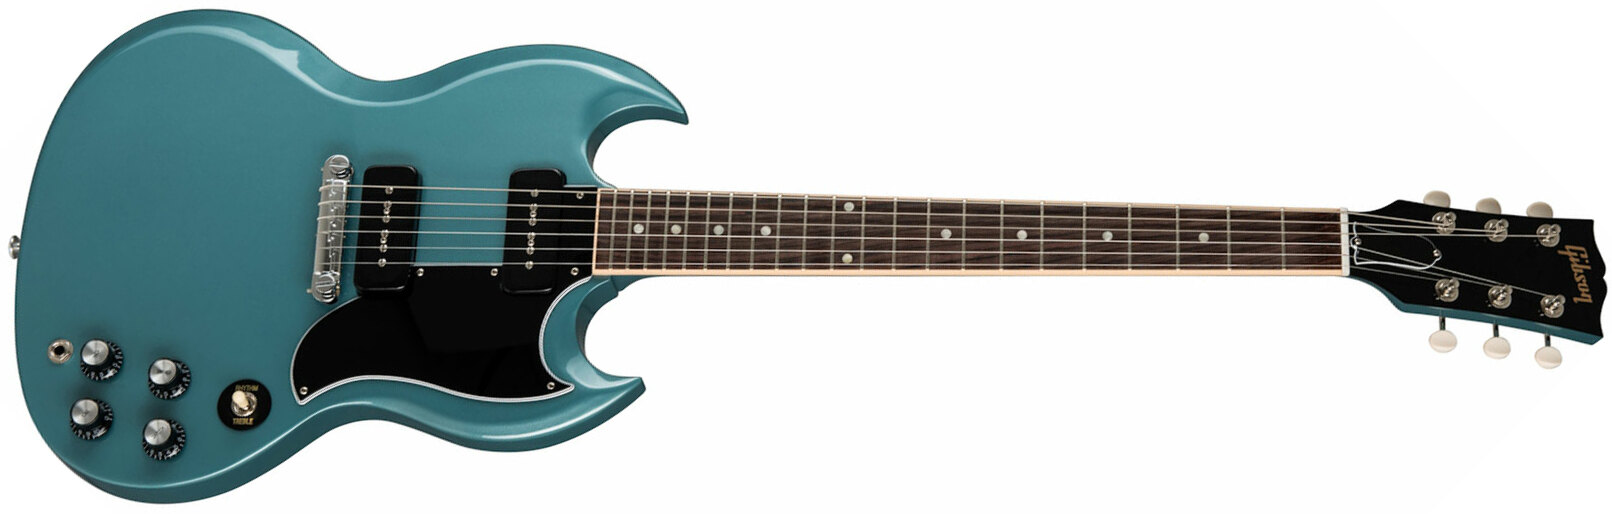 Gibson Sg Special Original P90 - Pelham Blue - Retro-Rock-E-Gitarre - Main picture